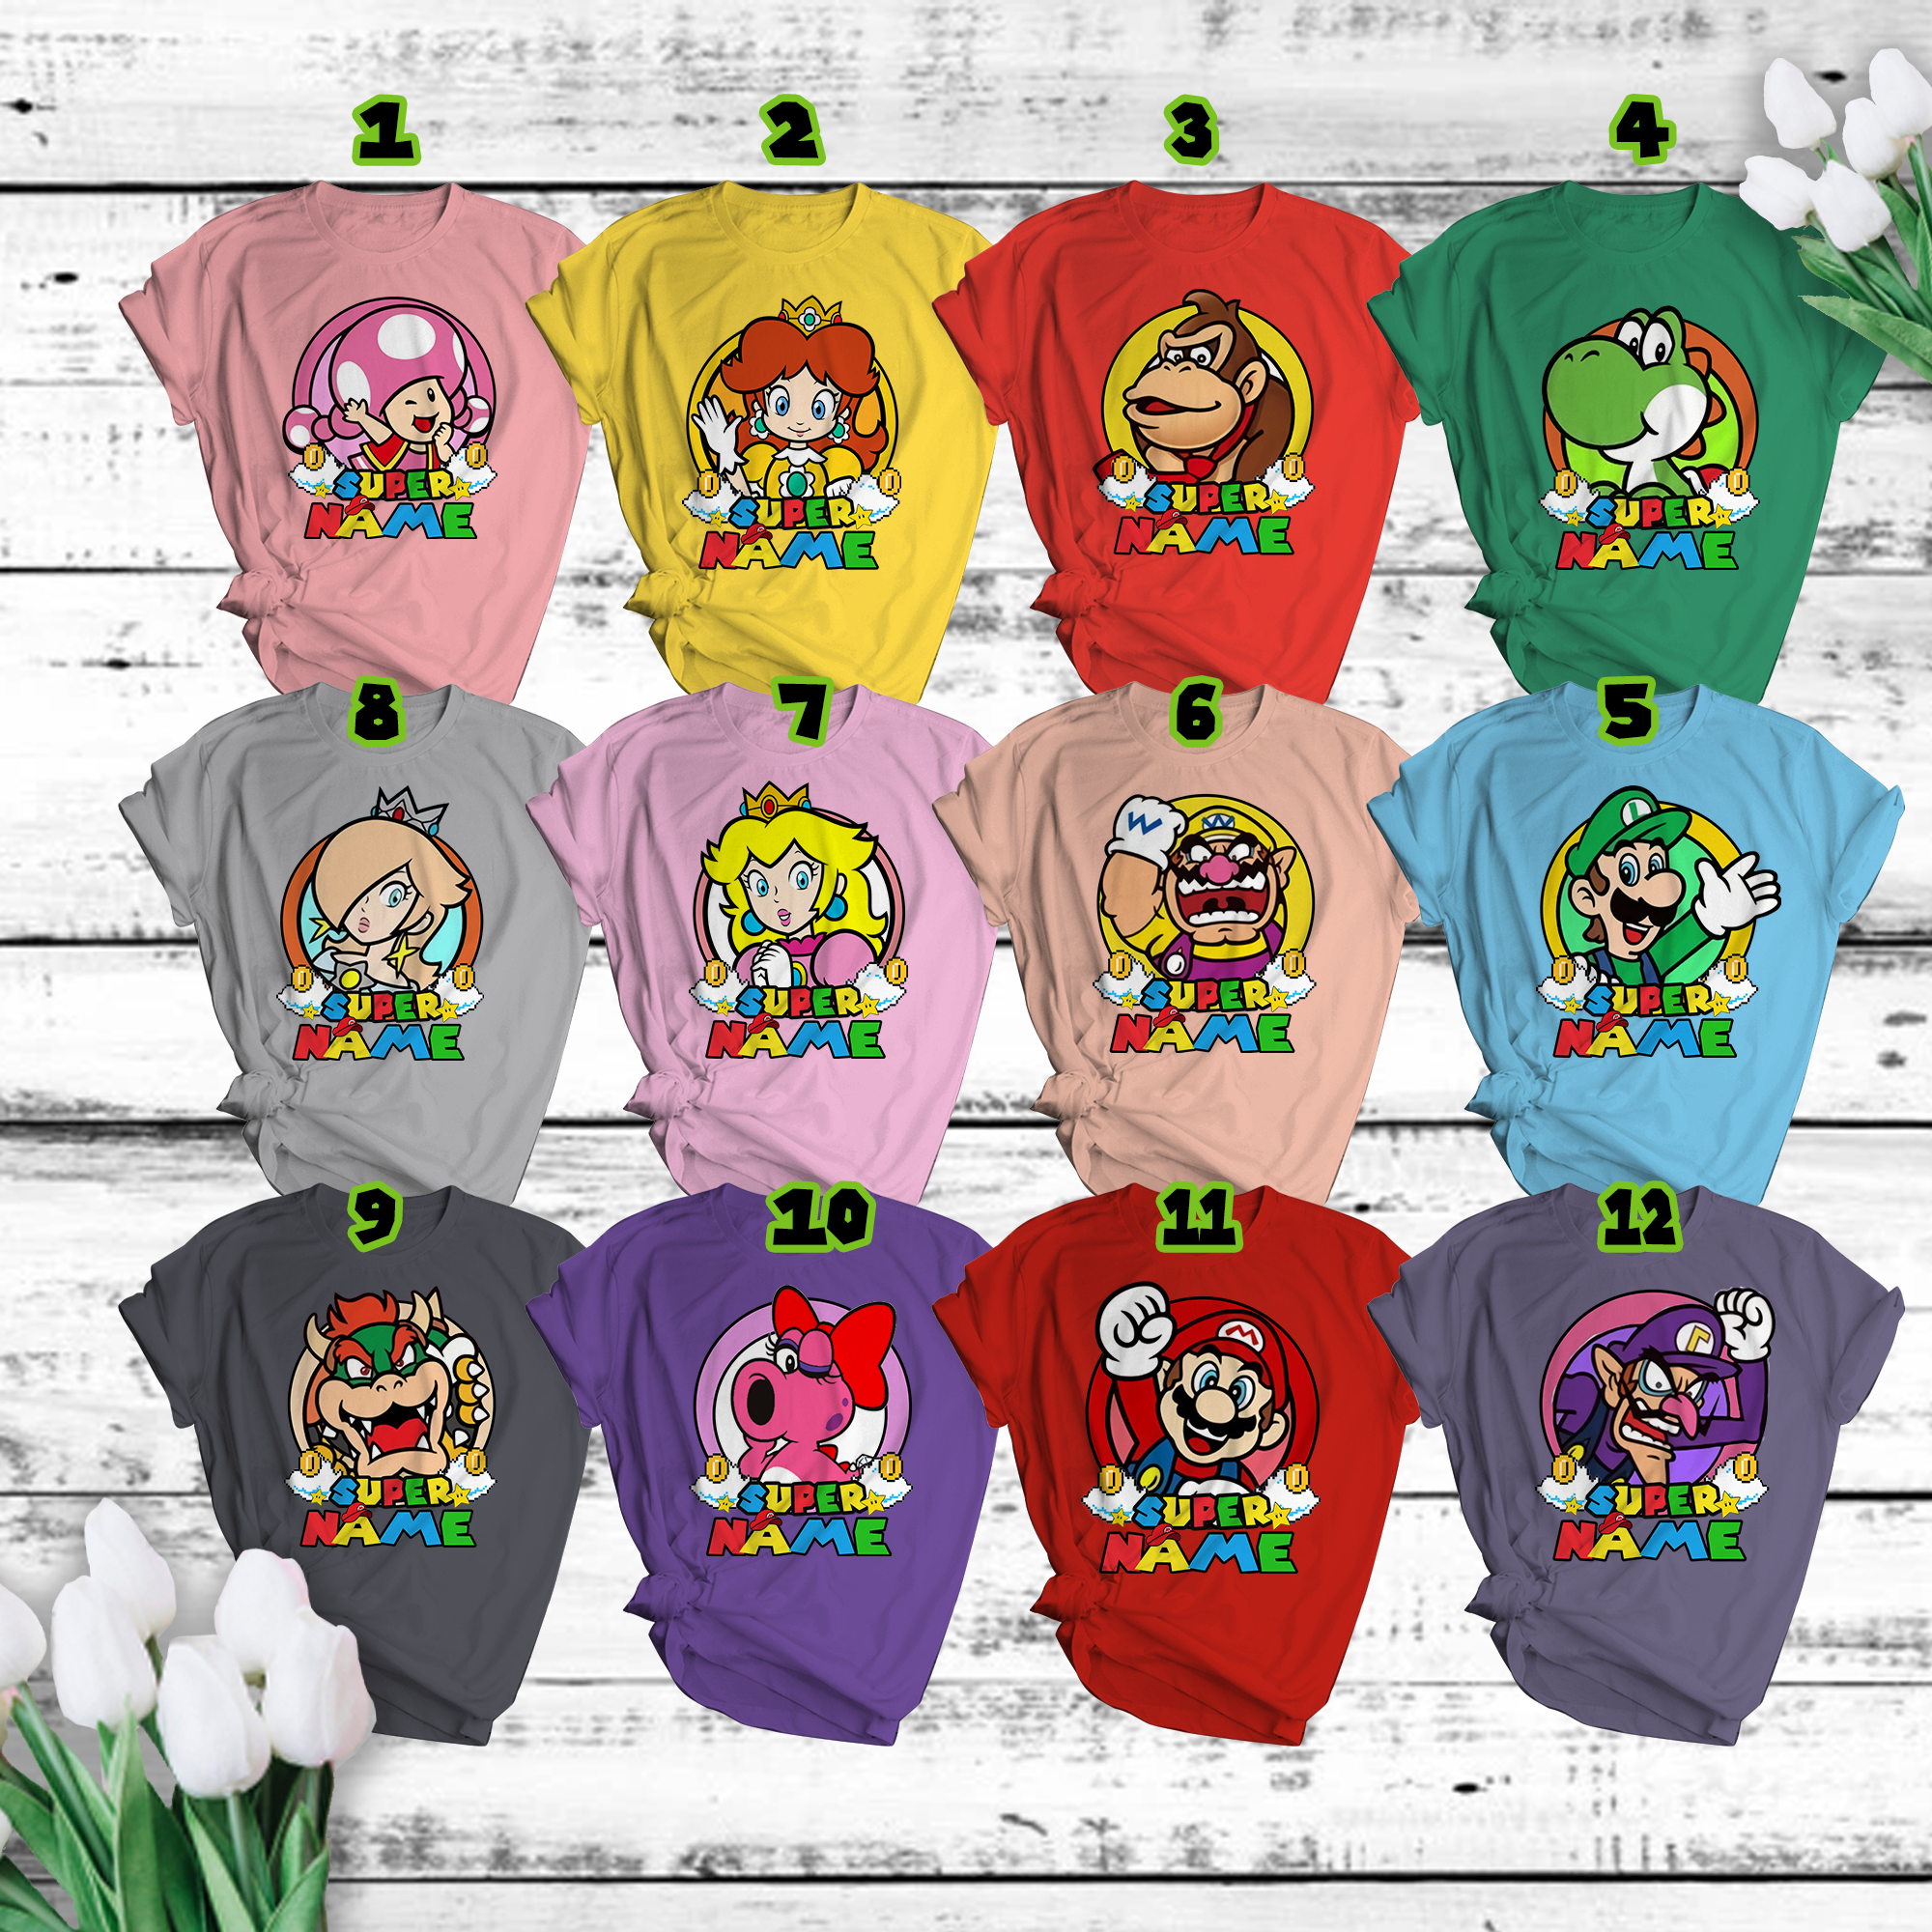 Super Mario Shirt, Super Mario Birthday Shirt, Super Mario Family Shirt, Mario & Friend Party Matching Tee